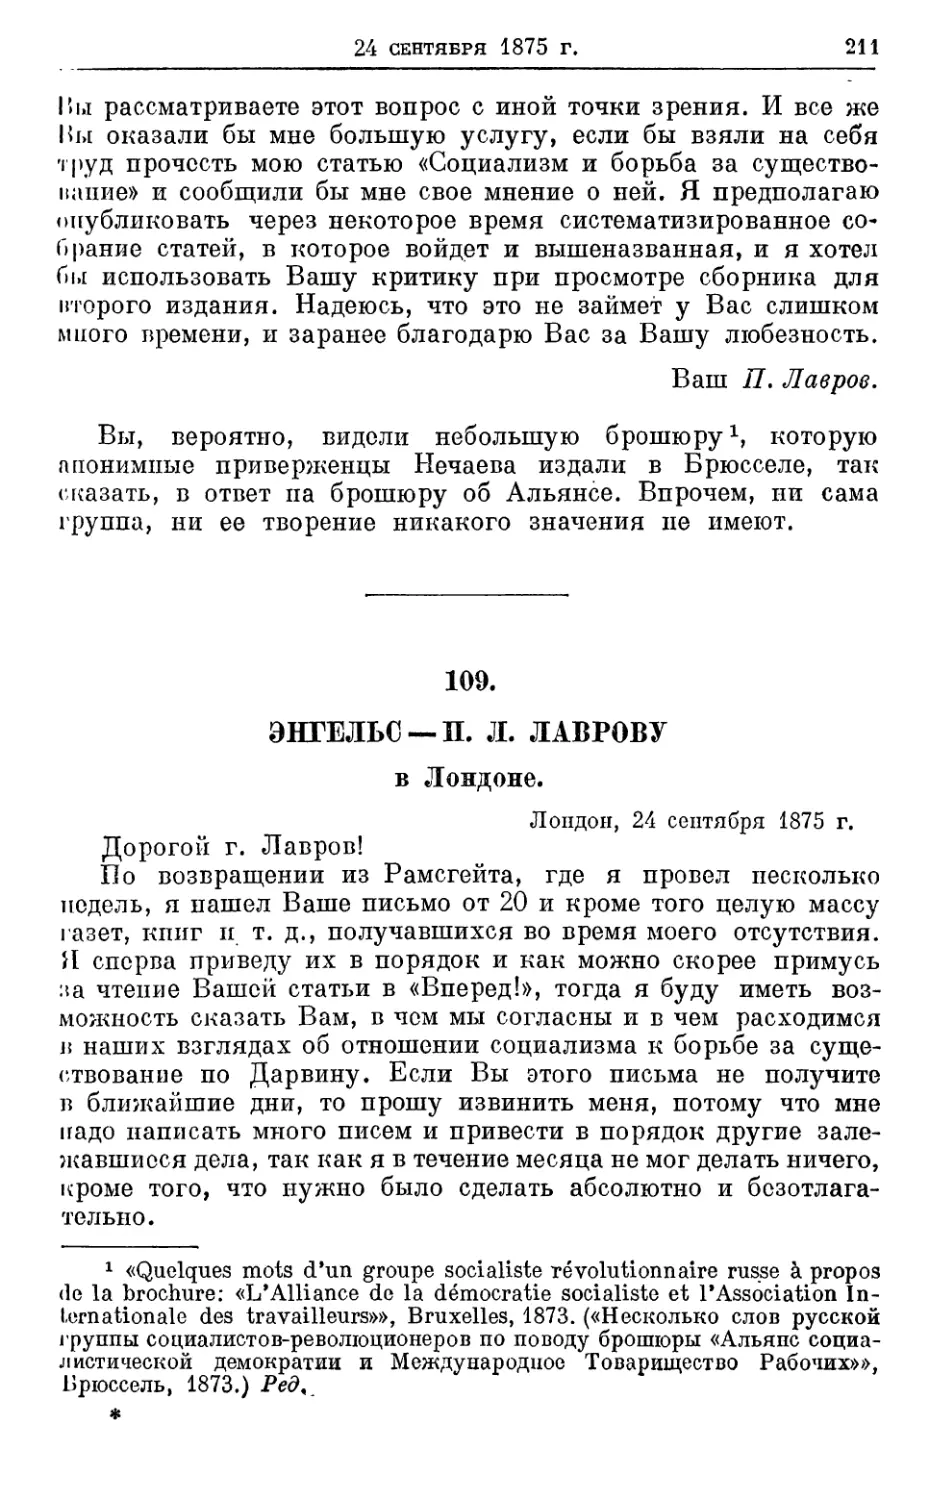 109. Энгельс— II. Л. Лаврову, 24 сентября 1875г